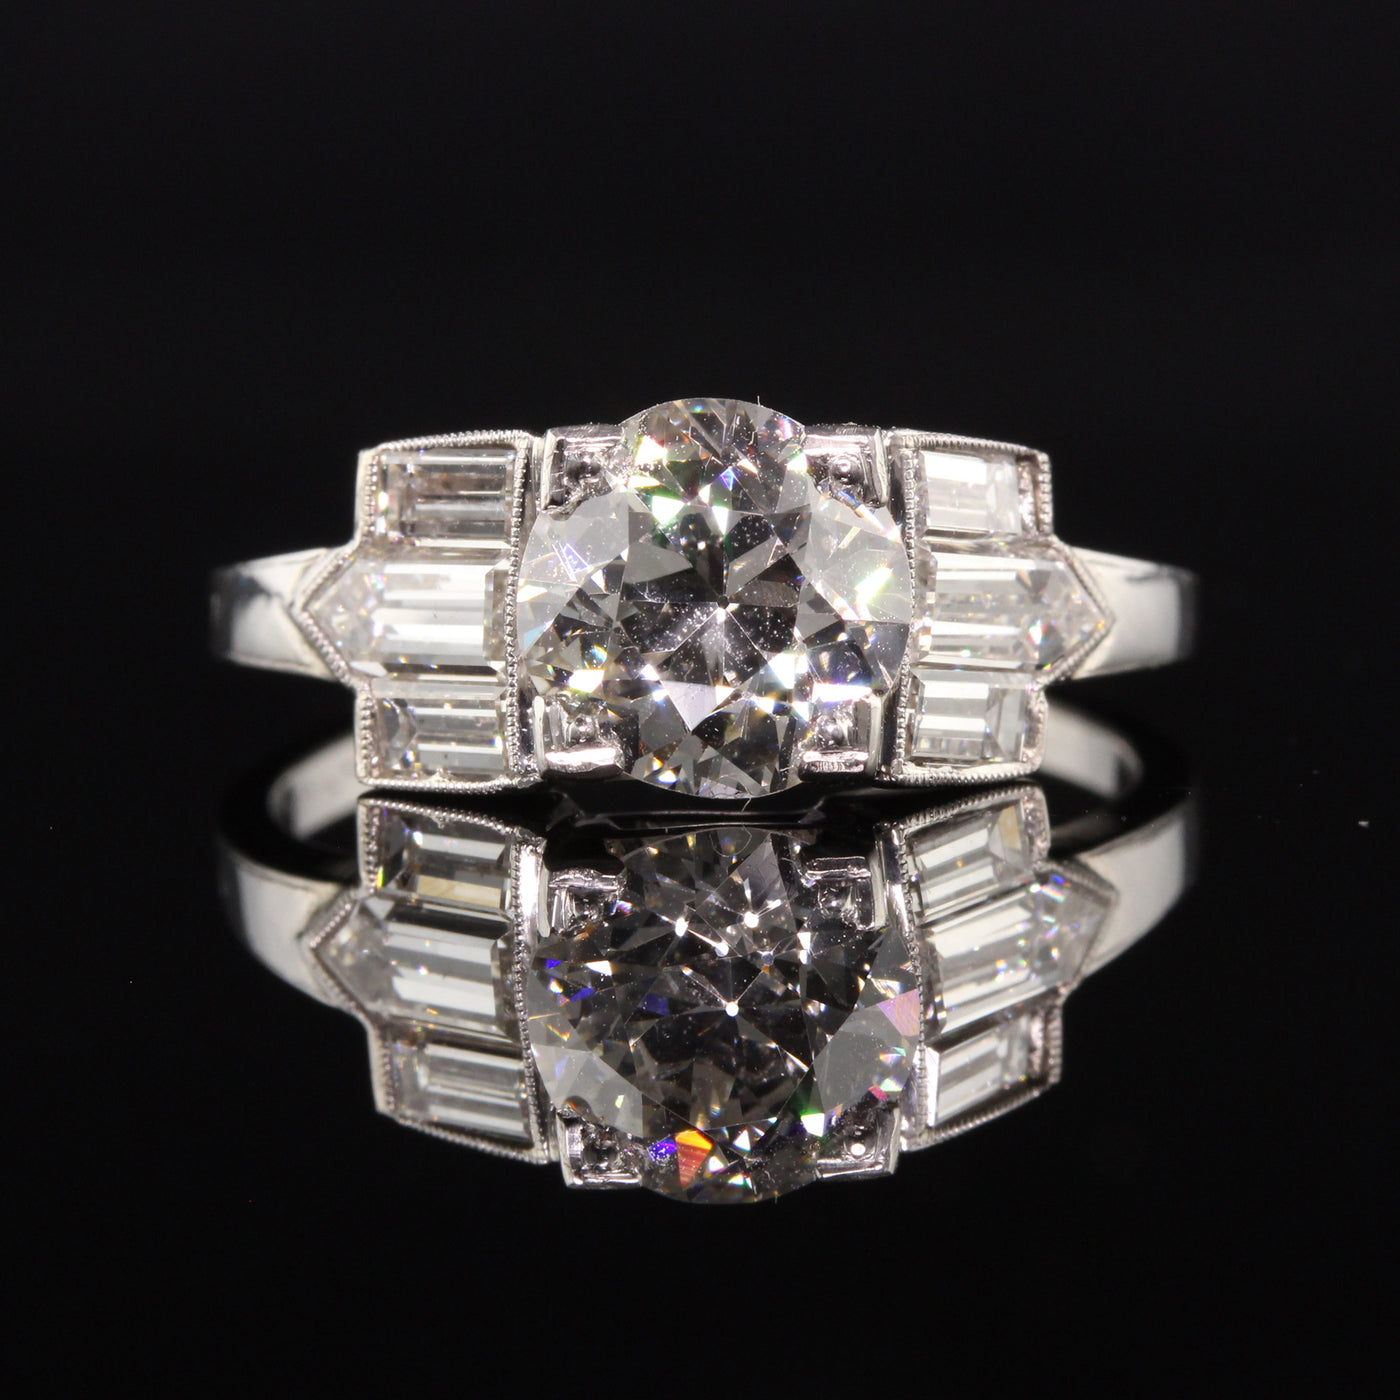 Antique Art Deco Platinum Old European Diamond Baguette Engagement Ring - GIA